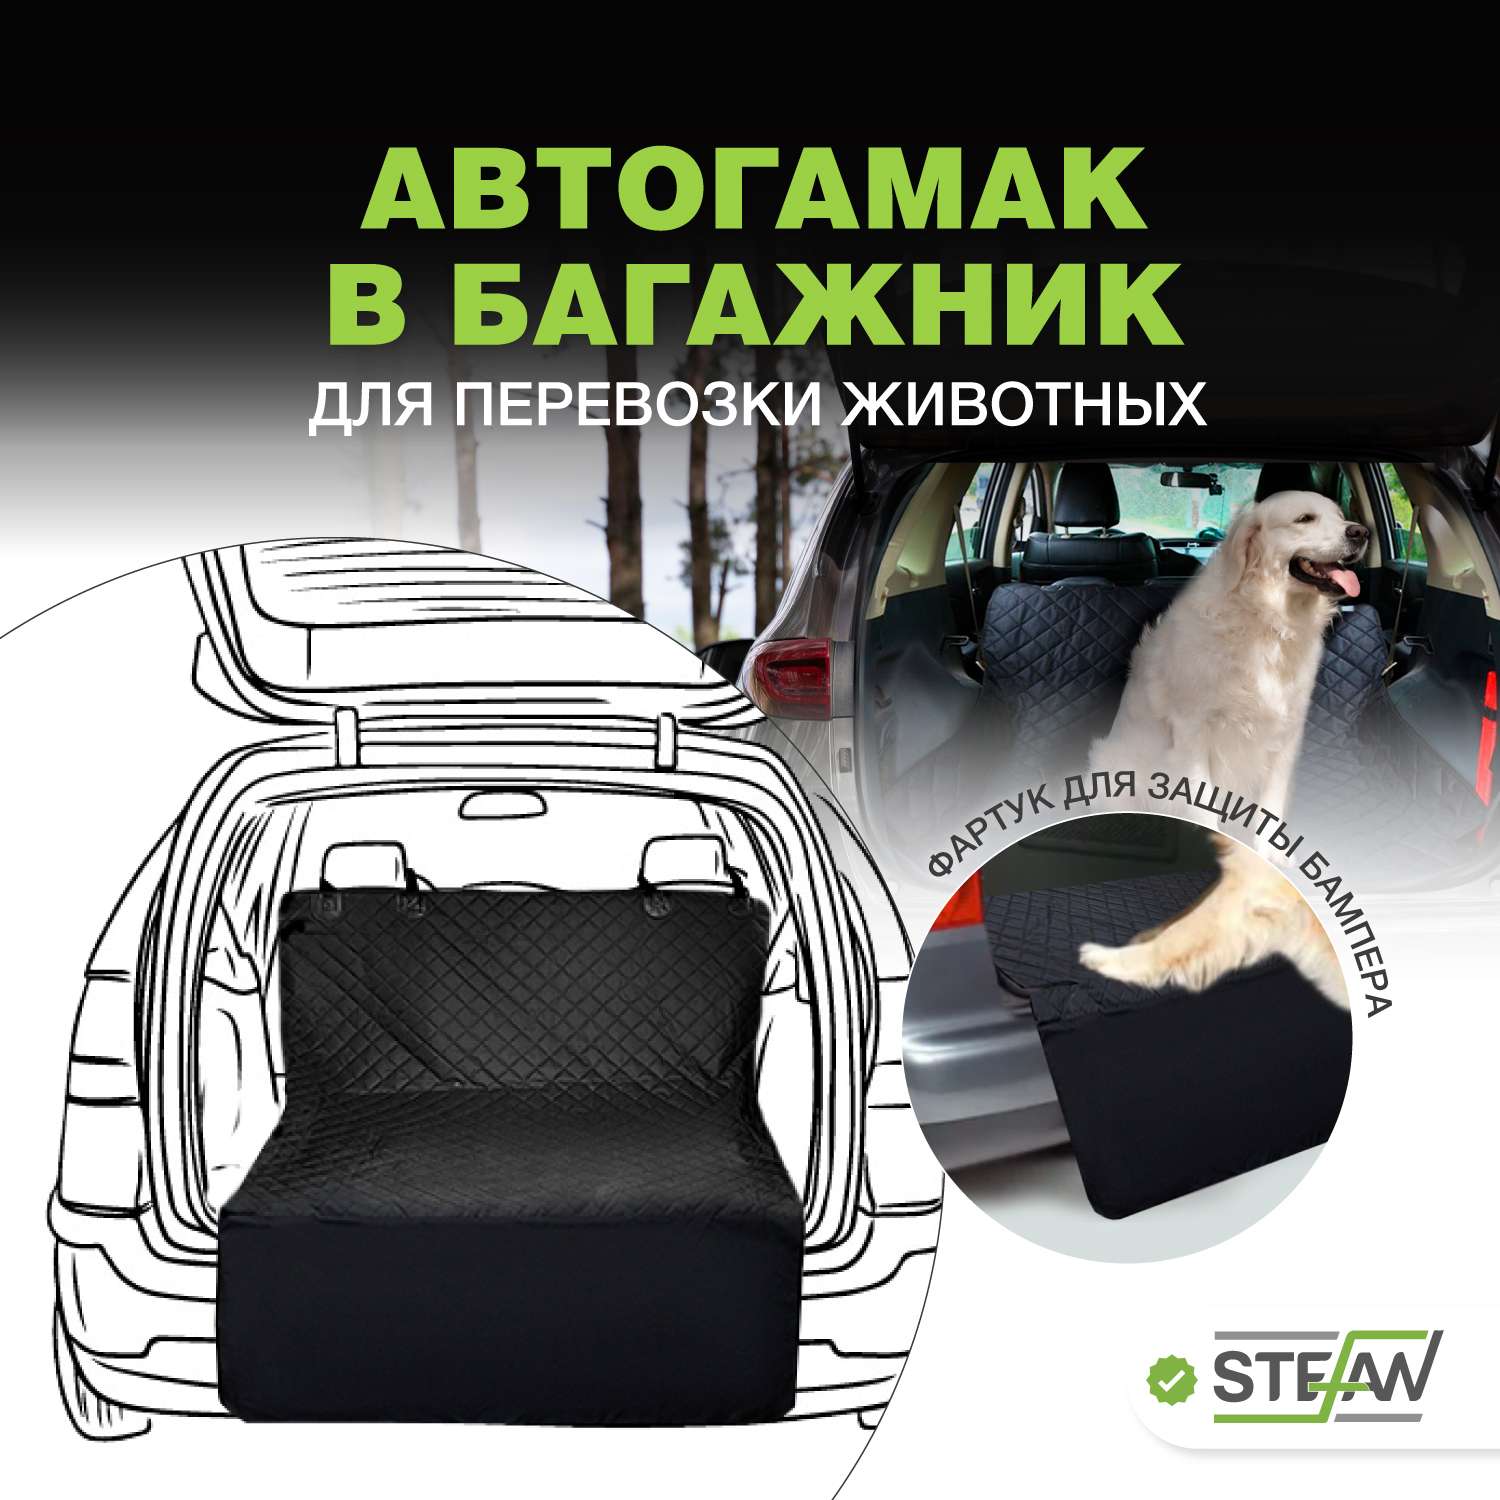 Автогамак для животных Stefan для багажника черный 135x205см - фото 1